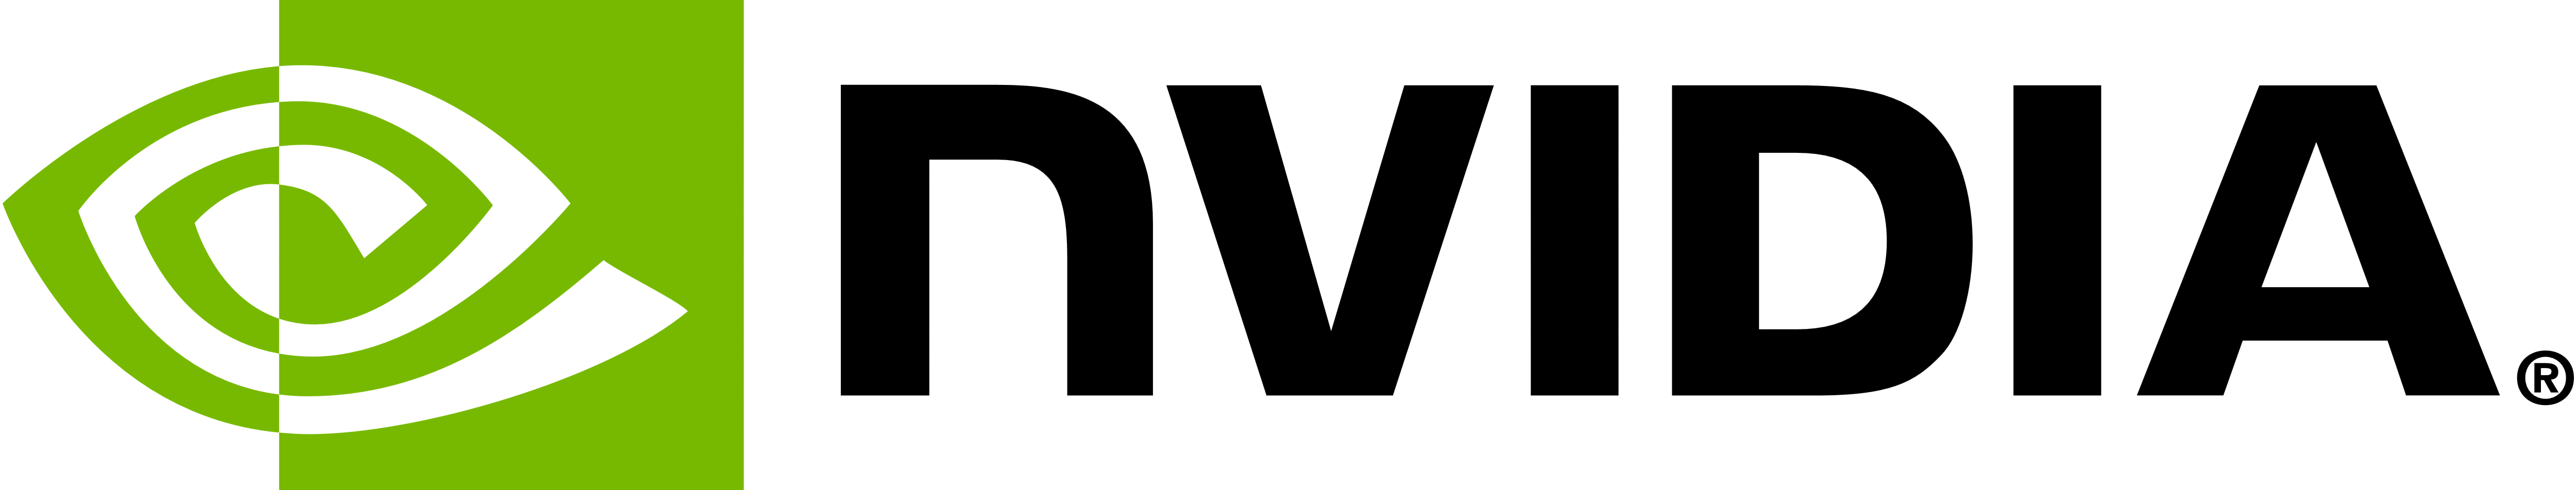 NVIDIA のロゴ